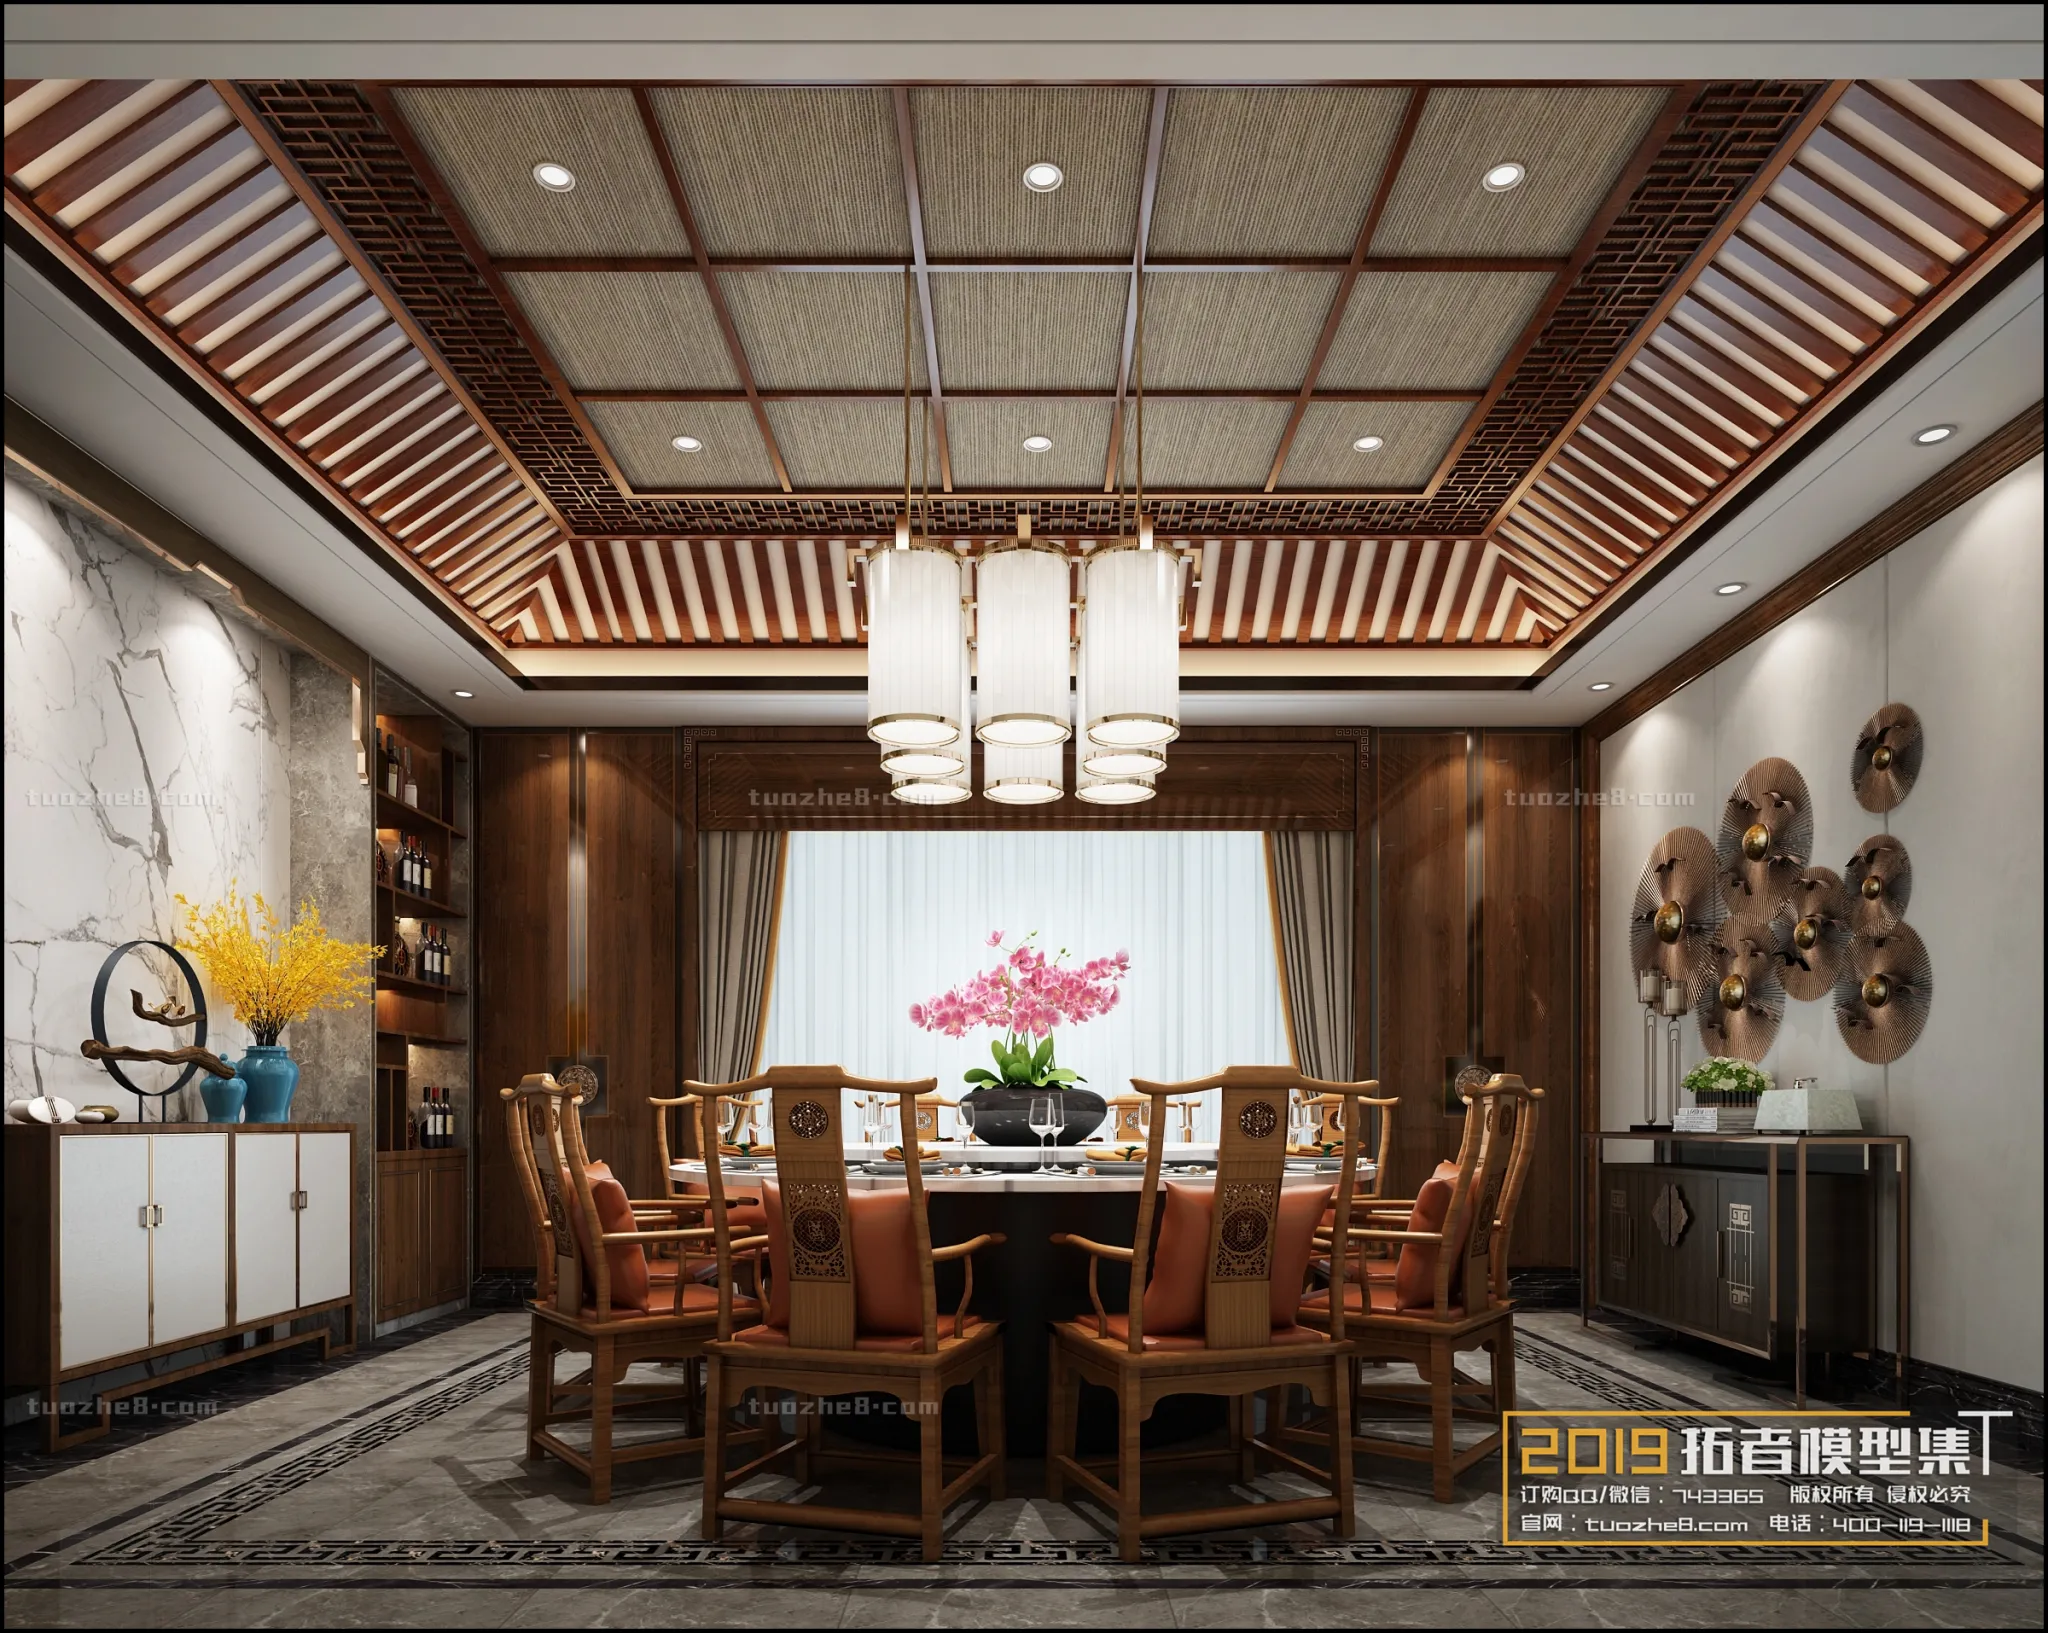 Extension Interior – RESTAURANT DINING – 013